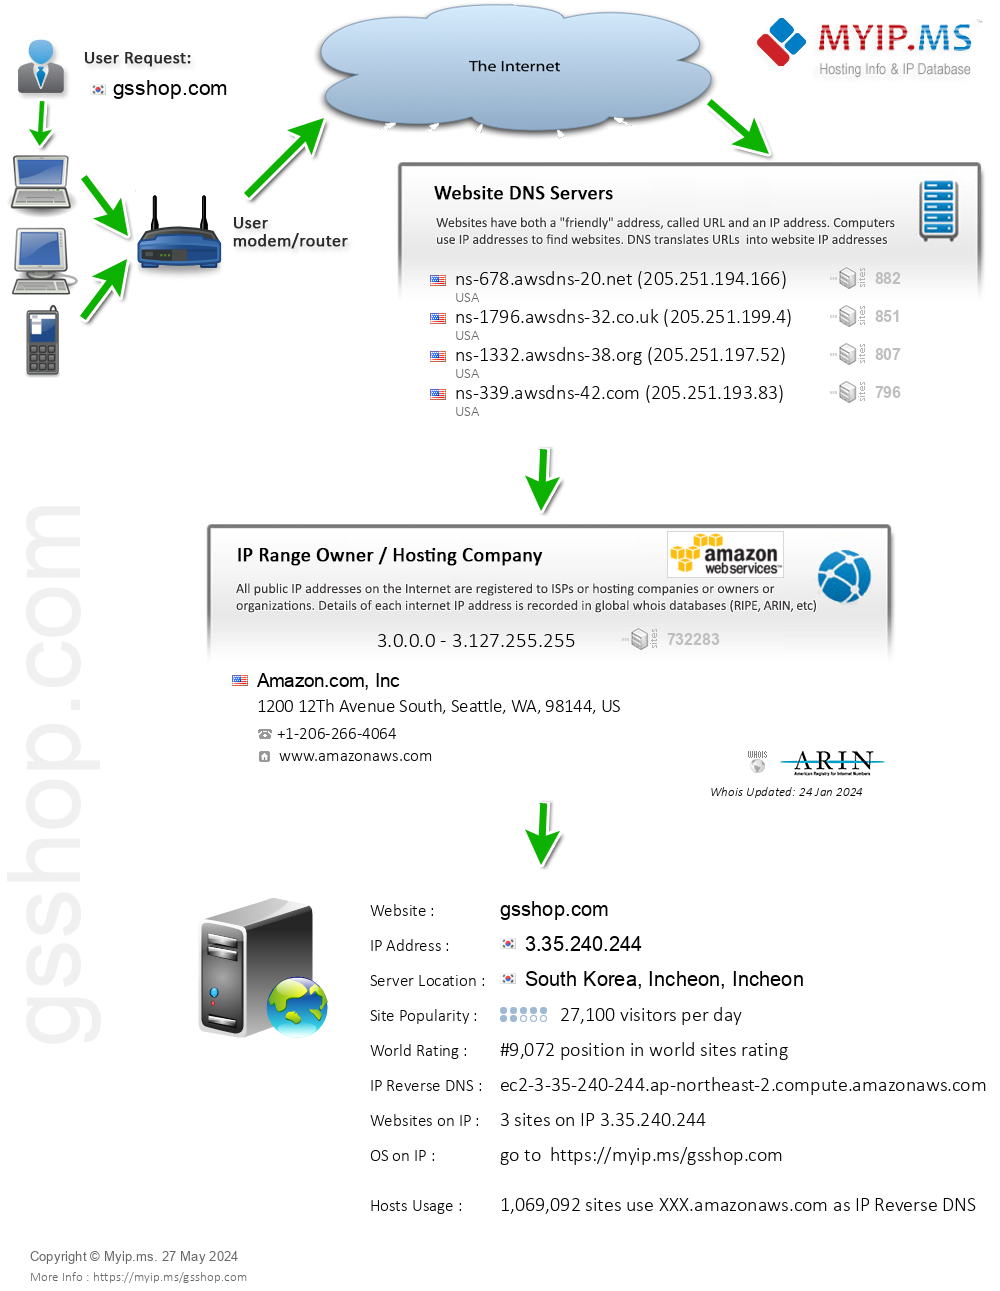 Gsshop.com - Website Hosting Visual IP Diagram